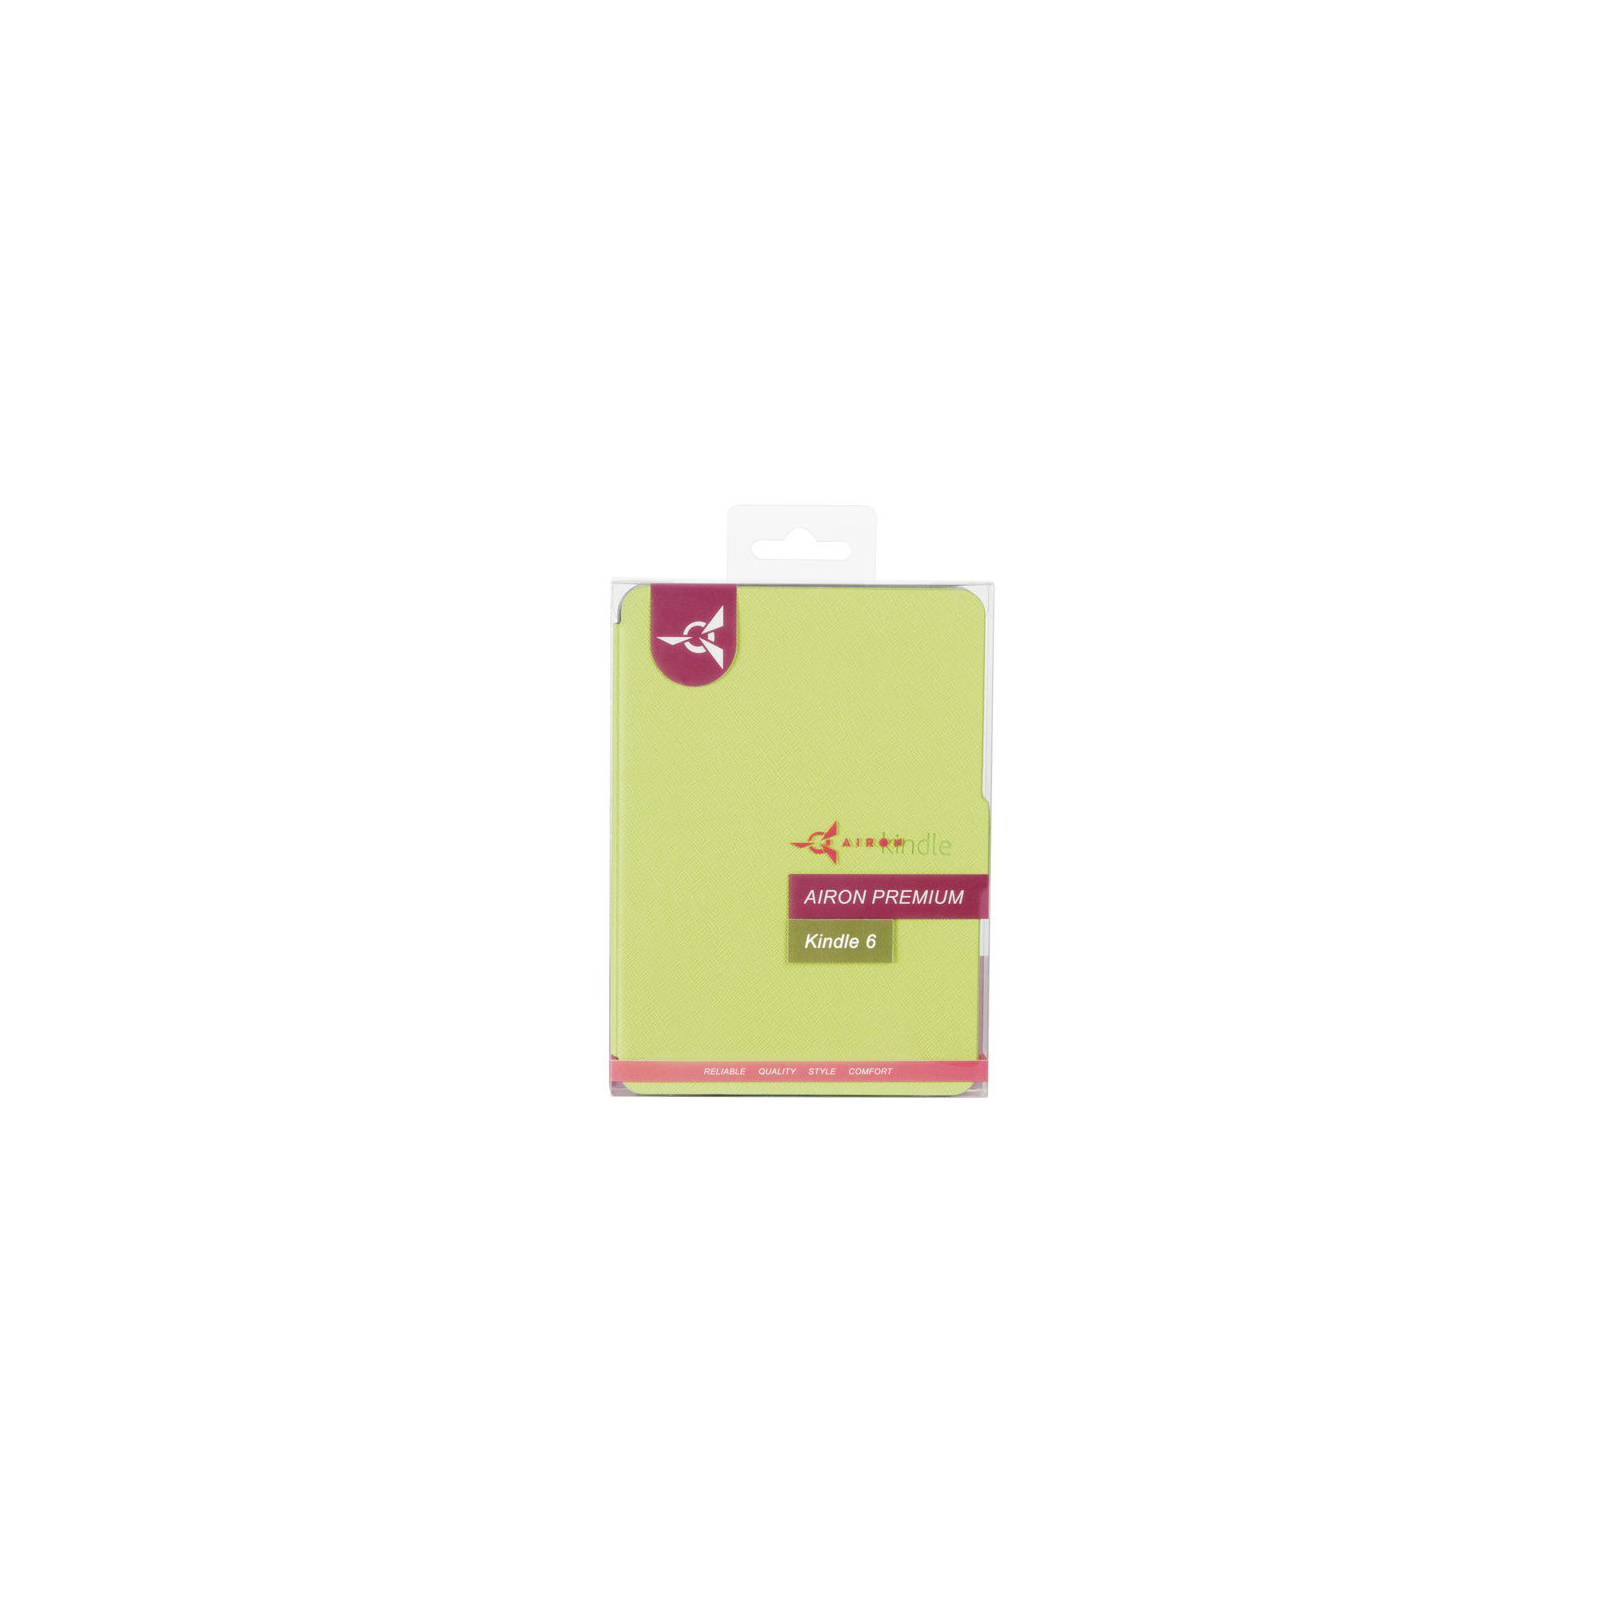 Чехол для электронной книги AirOn для Amazon Kindle 6 green (4822356754495) изображение 6